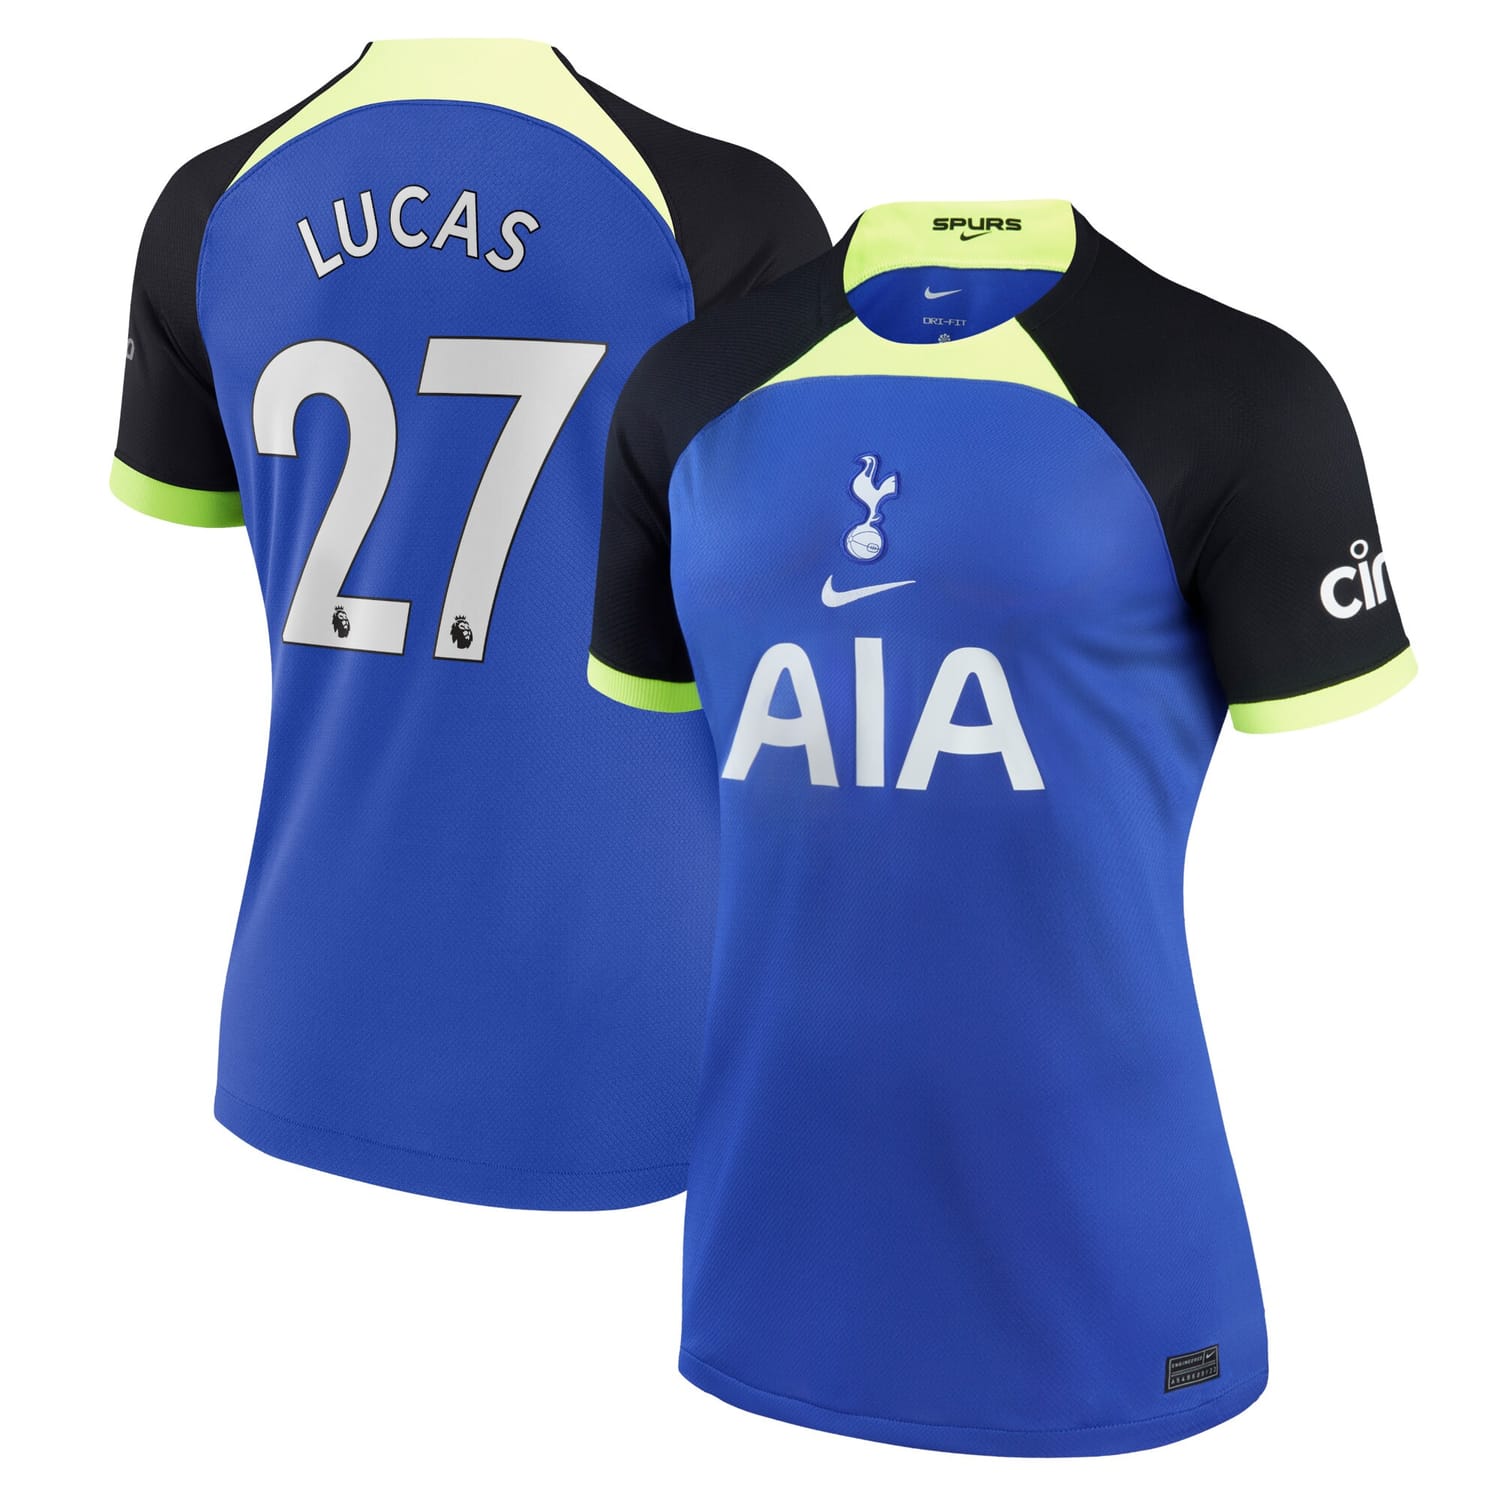 Premier League Tottenham Hotspur Away Jersey Shirt 2022-23 player Lucas Hernandez 27 printing for Women